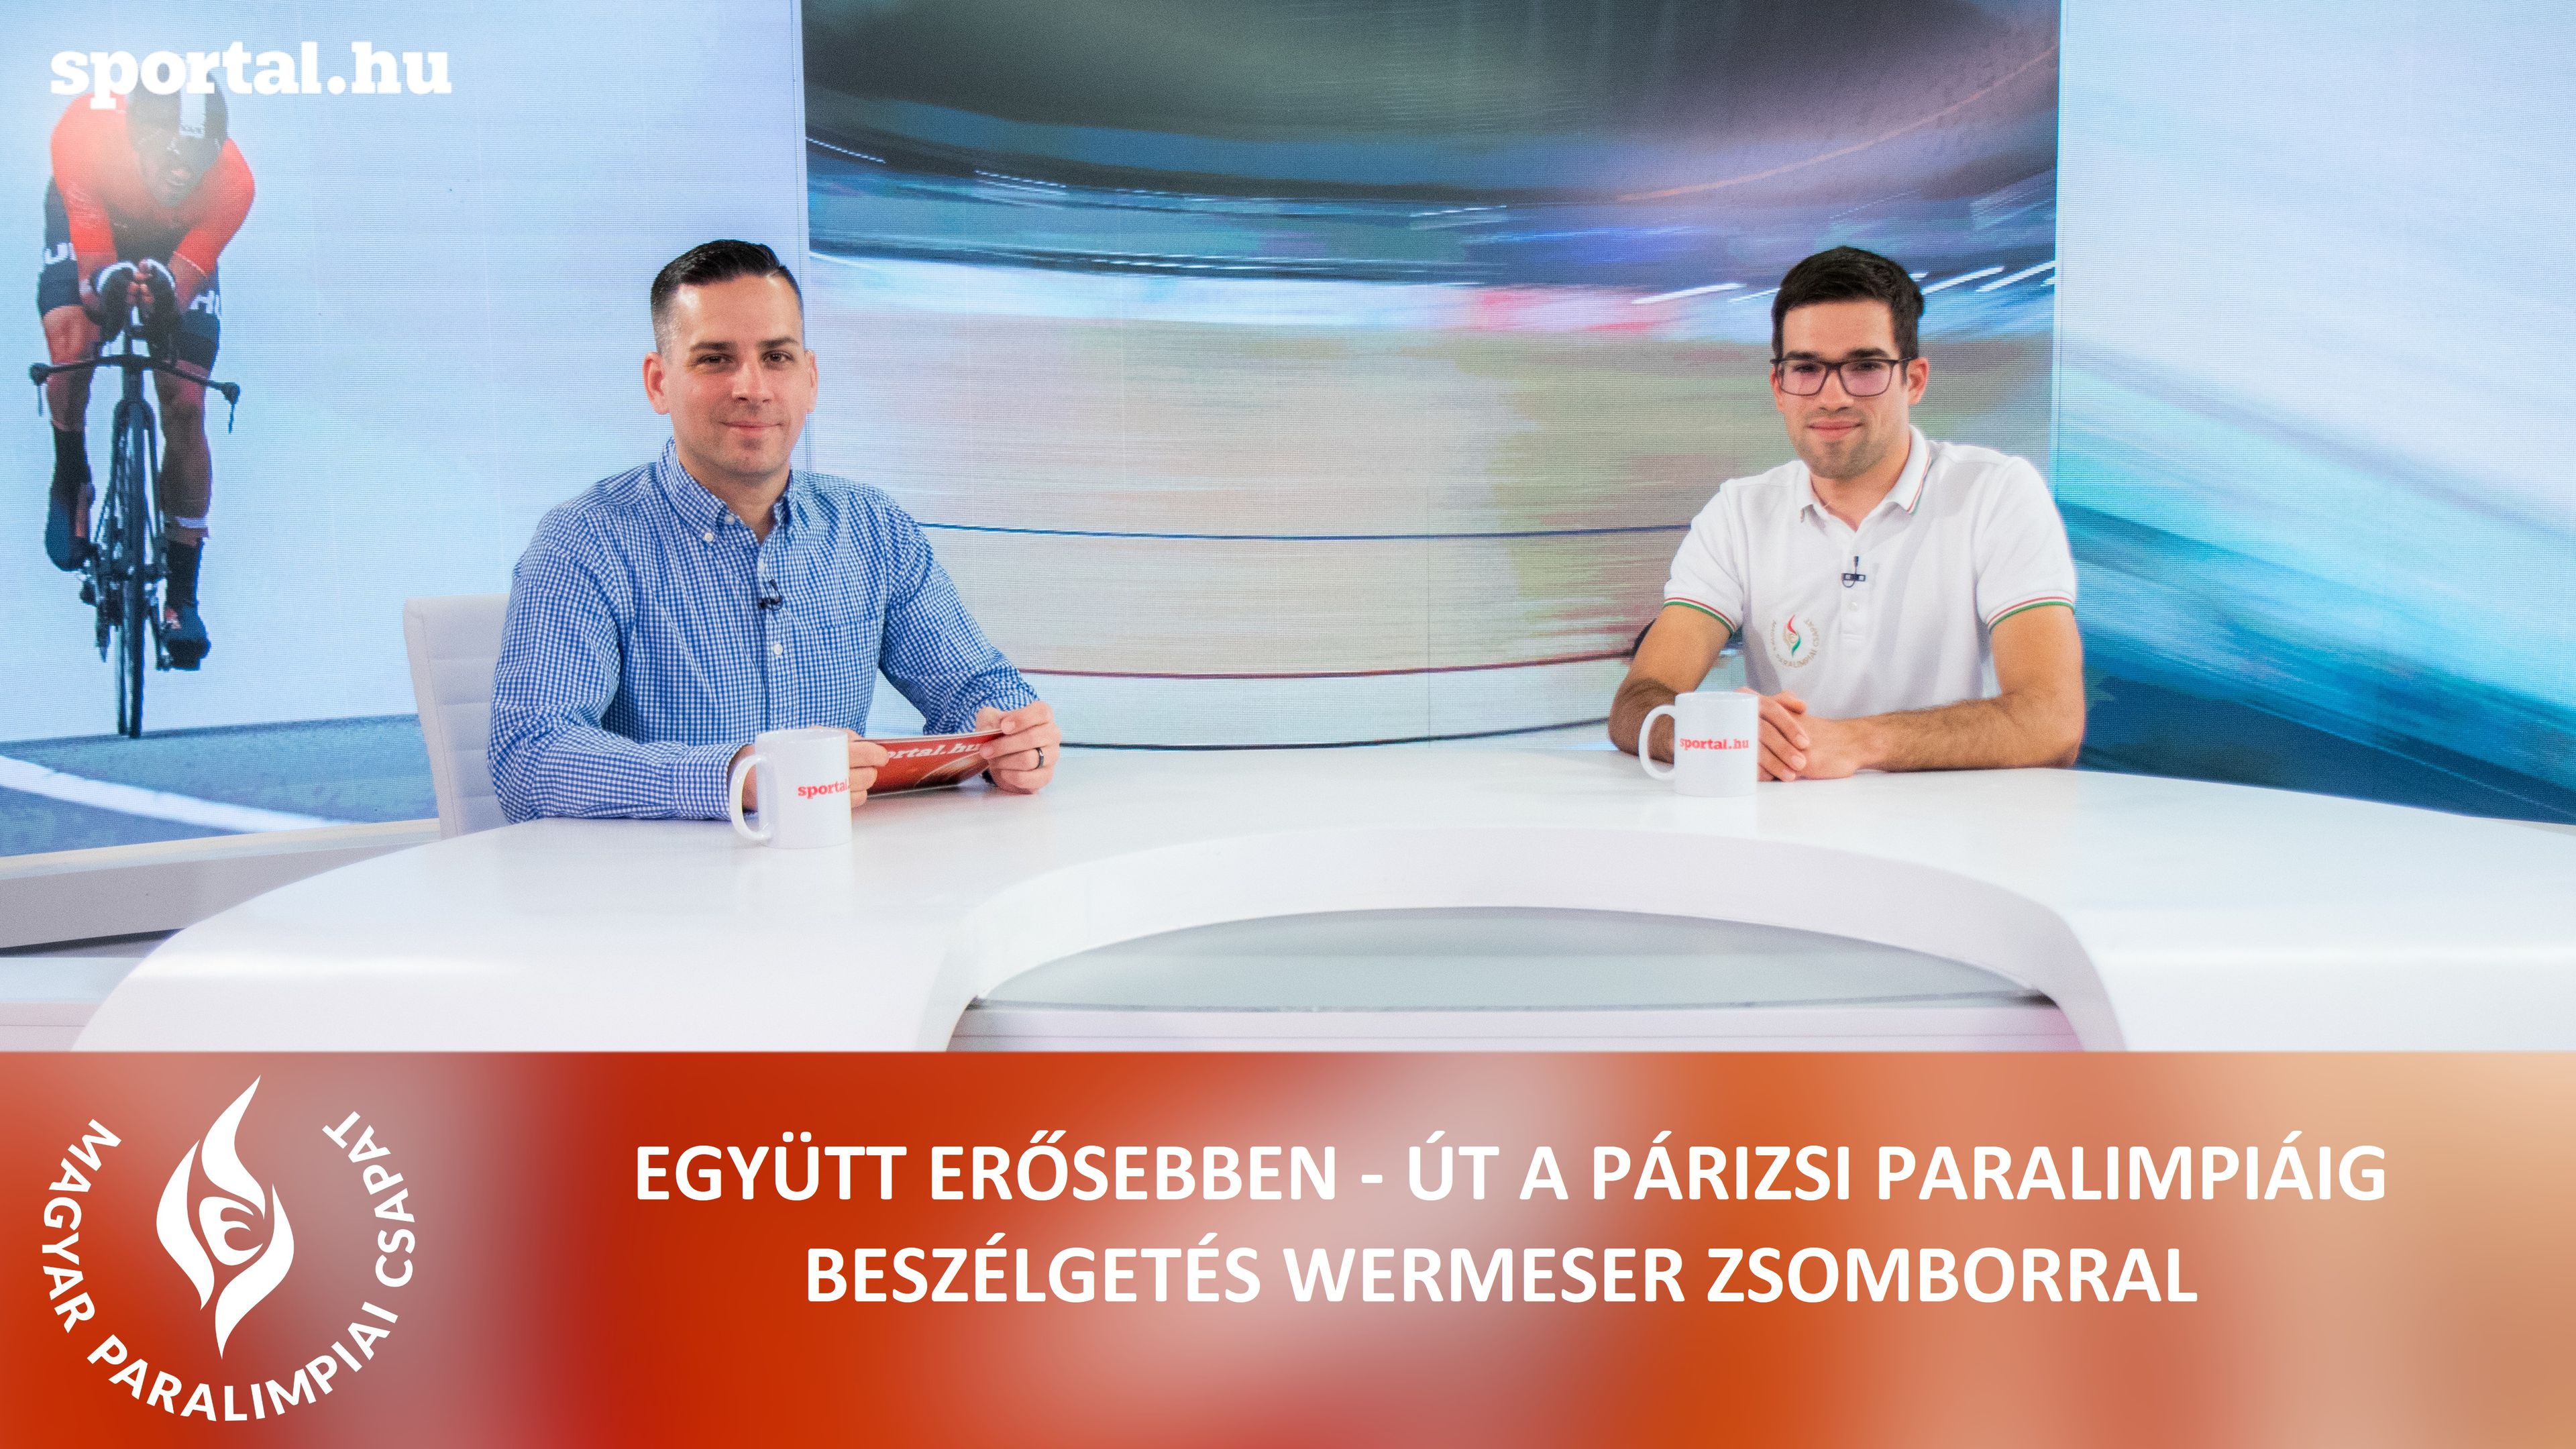 A Sportál Tv stúdiójában Wermeser Zsombor, paralimpiai hetedik helyezett parakerékpáros